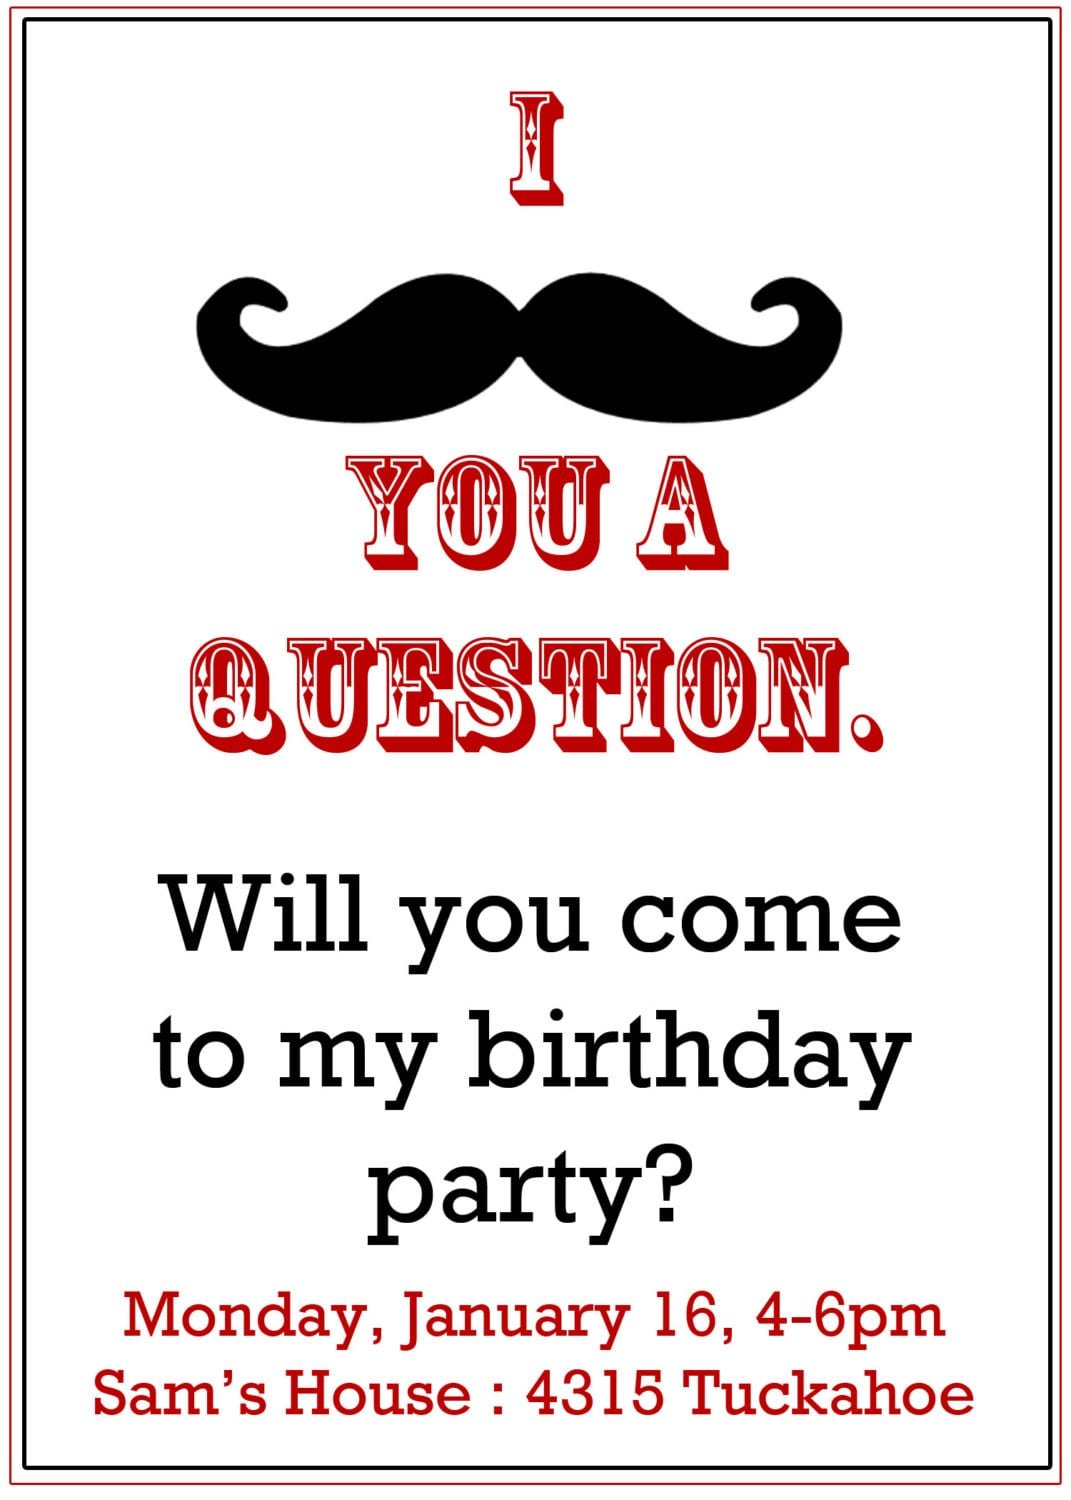 Mustache Party Invitation